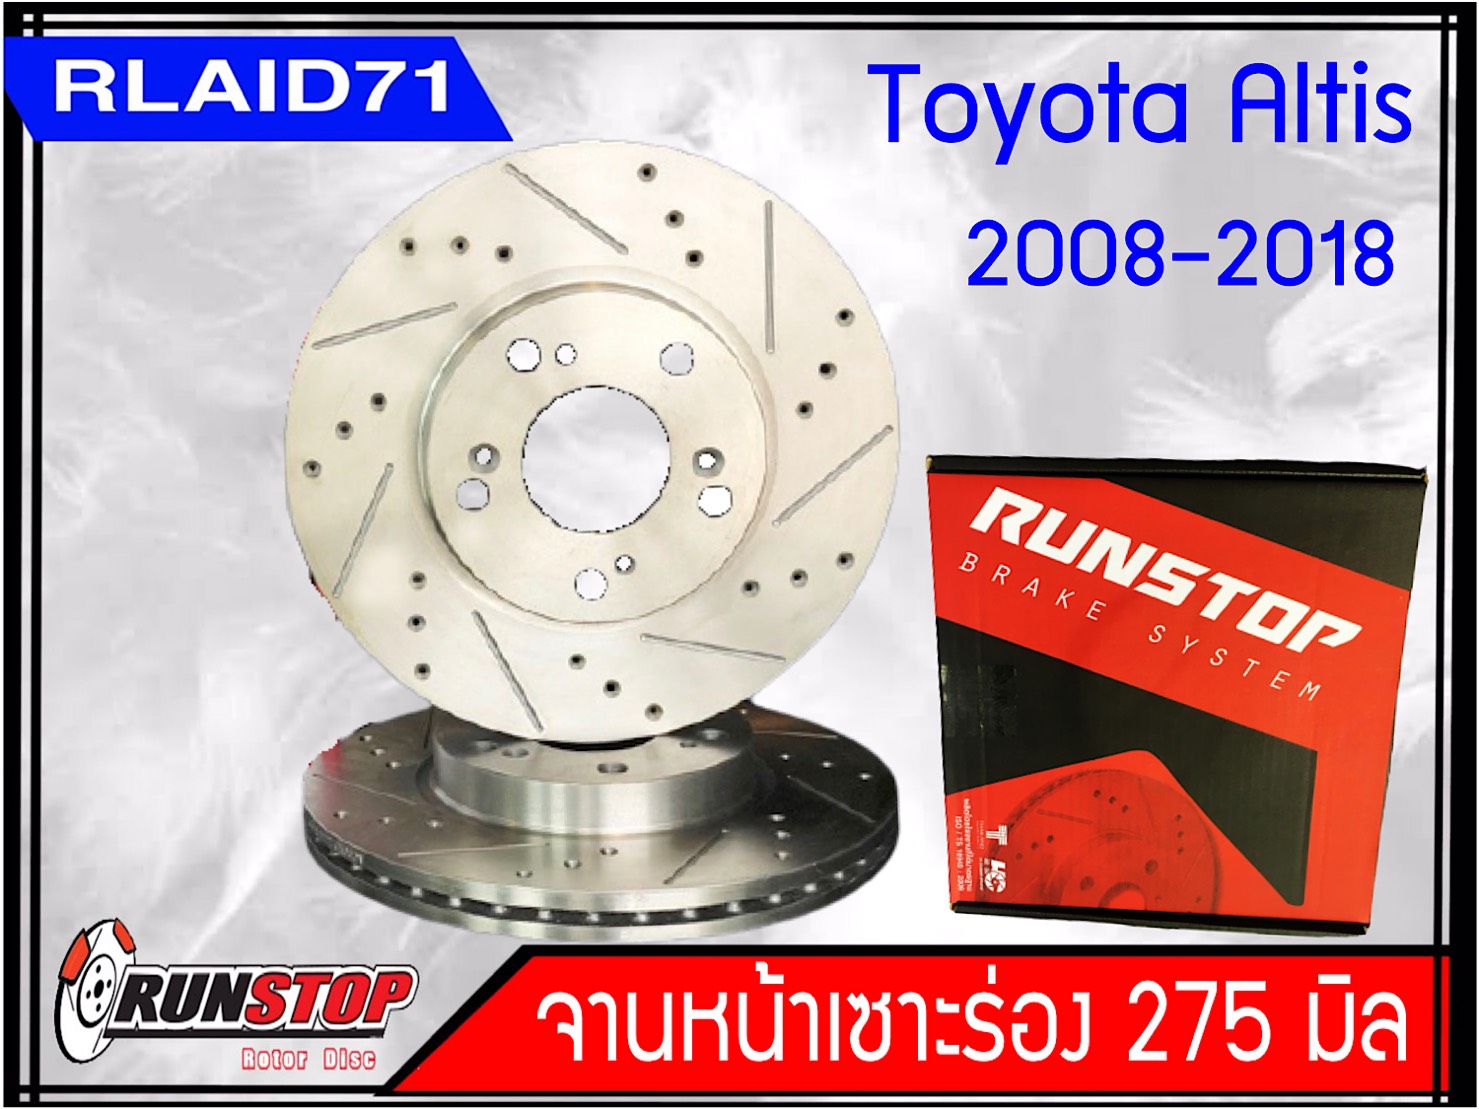 จานเบรคหน้า เซาะร่อง Runstop Racing Slot Toyota Altis 2008-2018 ขนาด 275 มิล 1 คู่ ( 2 ชิ้น)